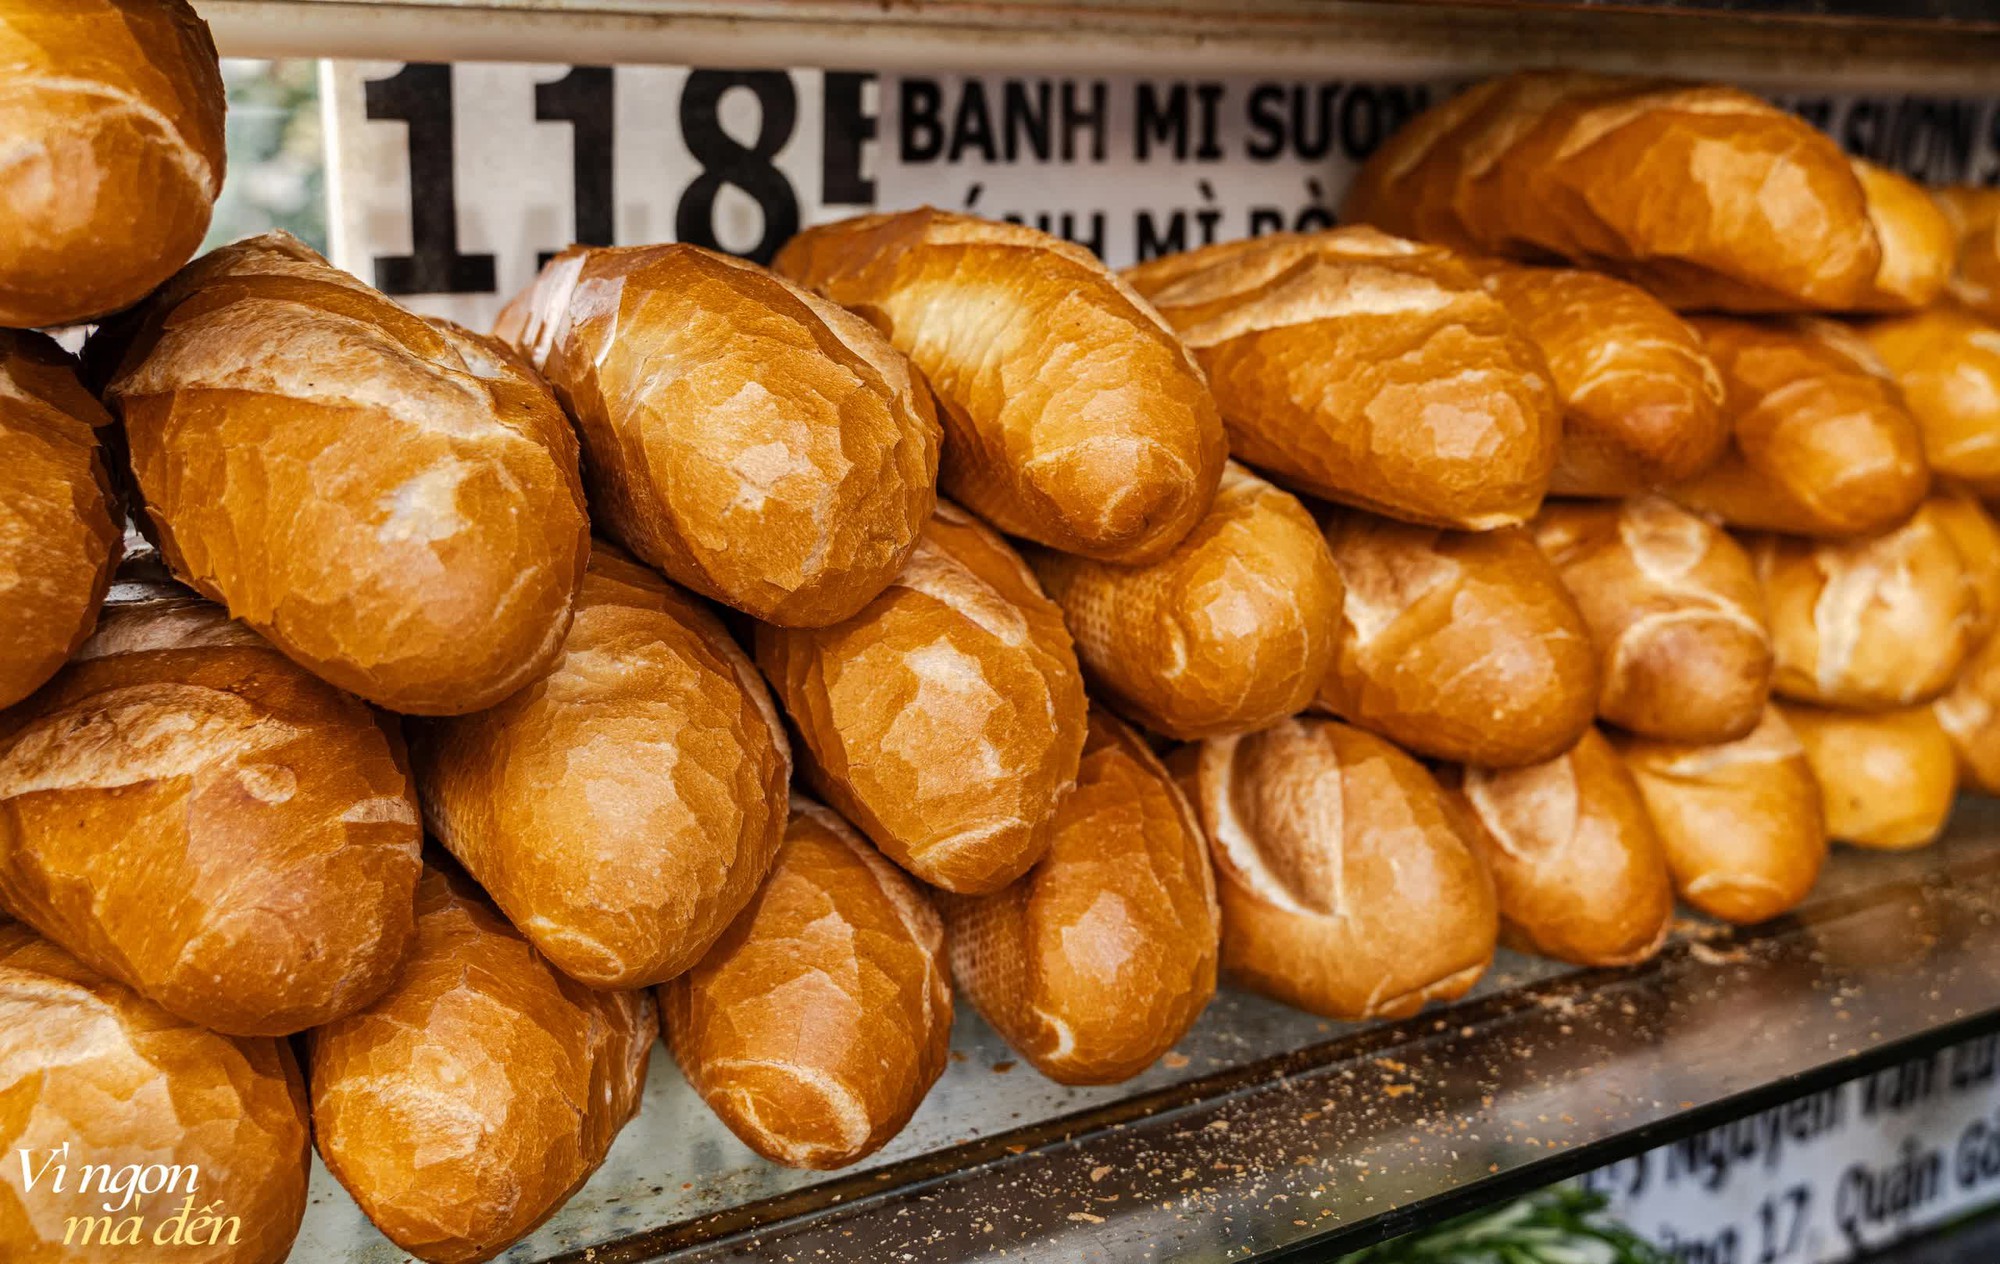 Tiệm bánh mì hơn 40 năm tuổi nức tiếng với topping sườn sụn giòn sần sật ăn cùng dưa chua lạ miệng, size to nhất lên đến 70.000VNĐ/chiếc- Ảnh 23.